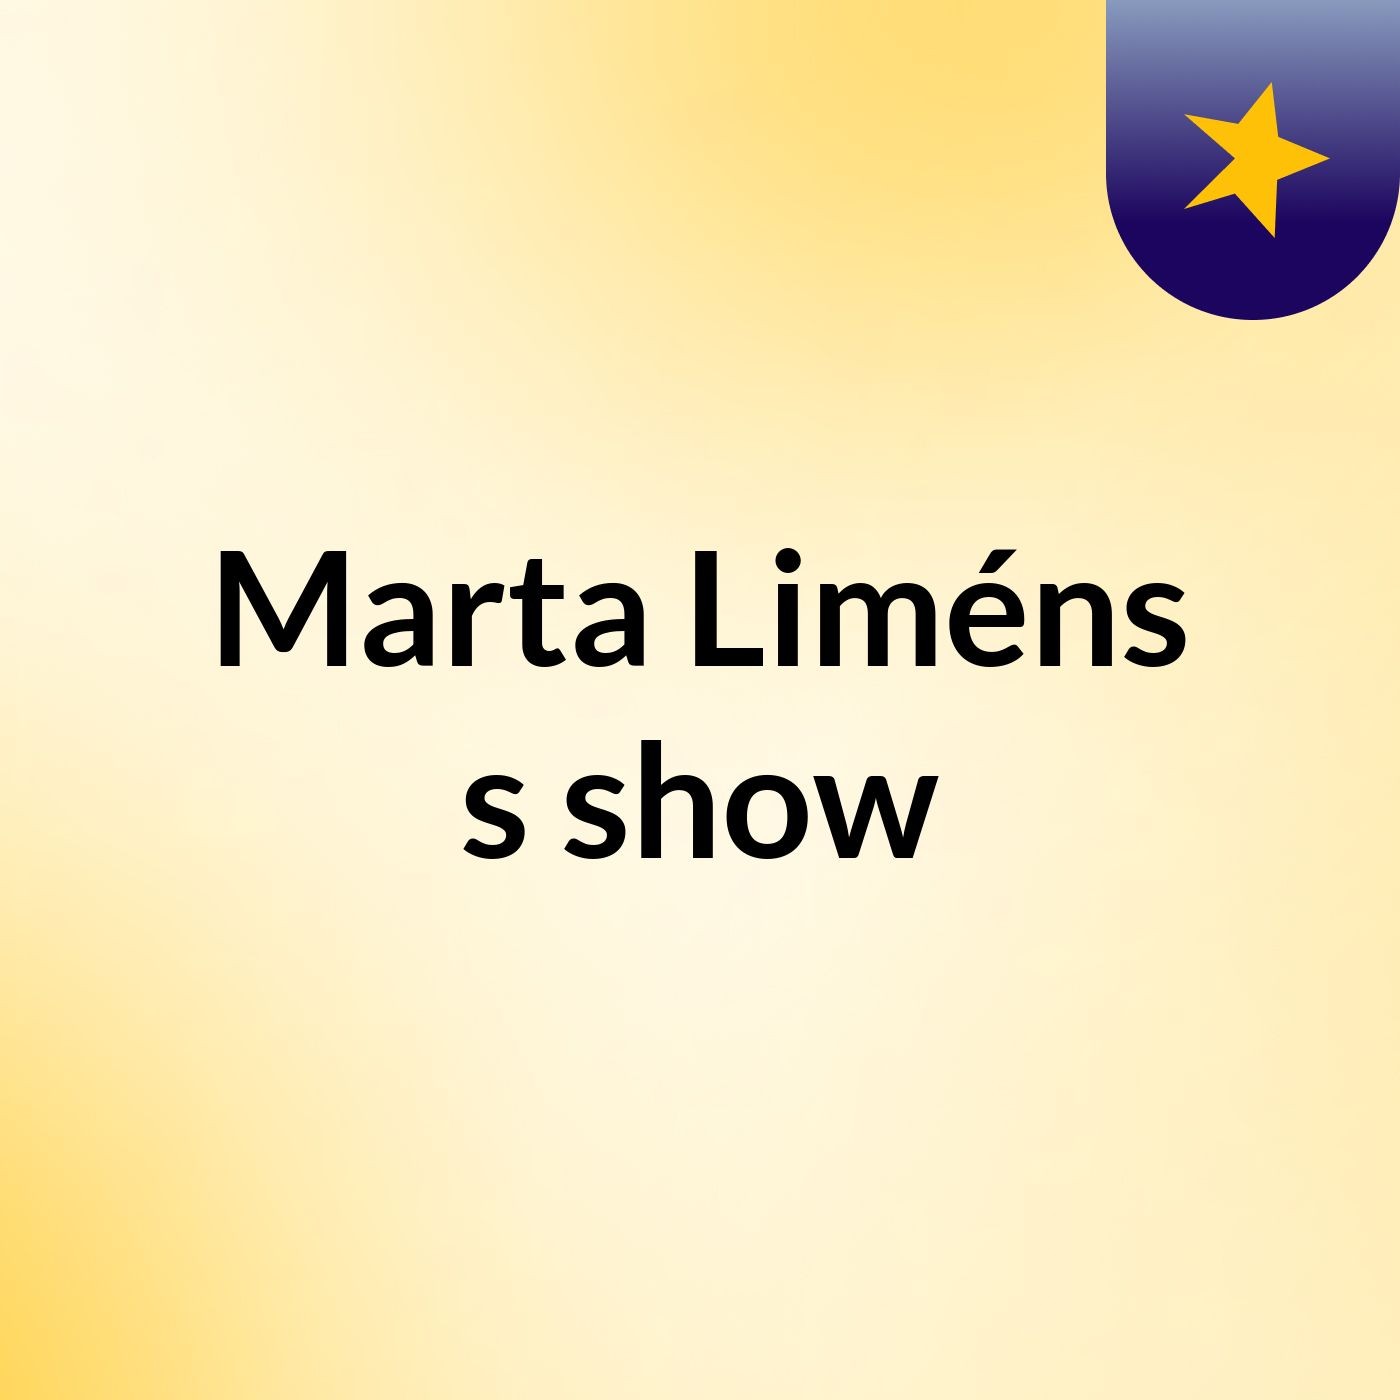 Marta Liméns's show